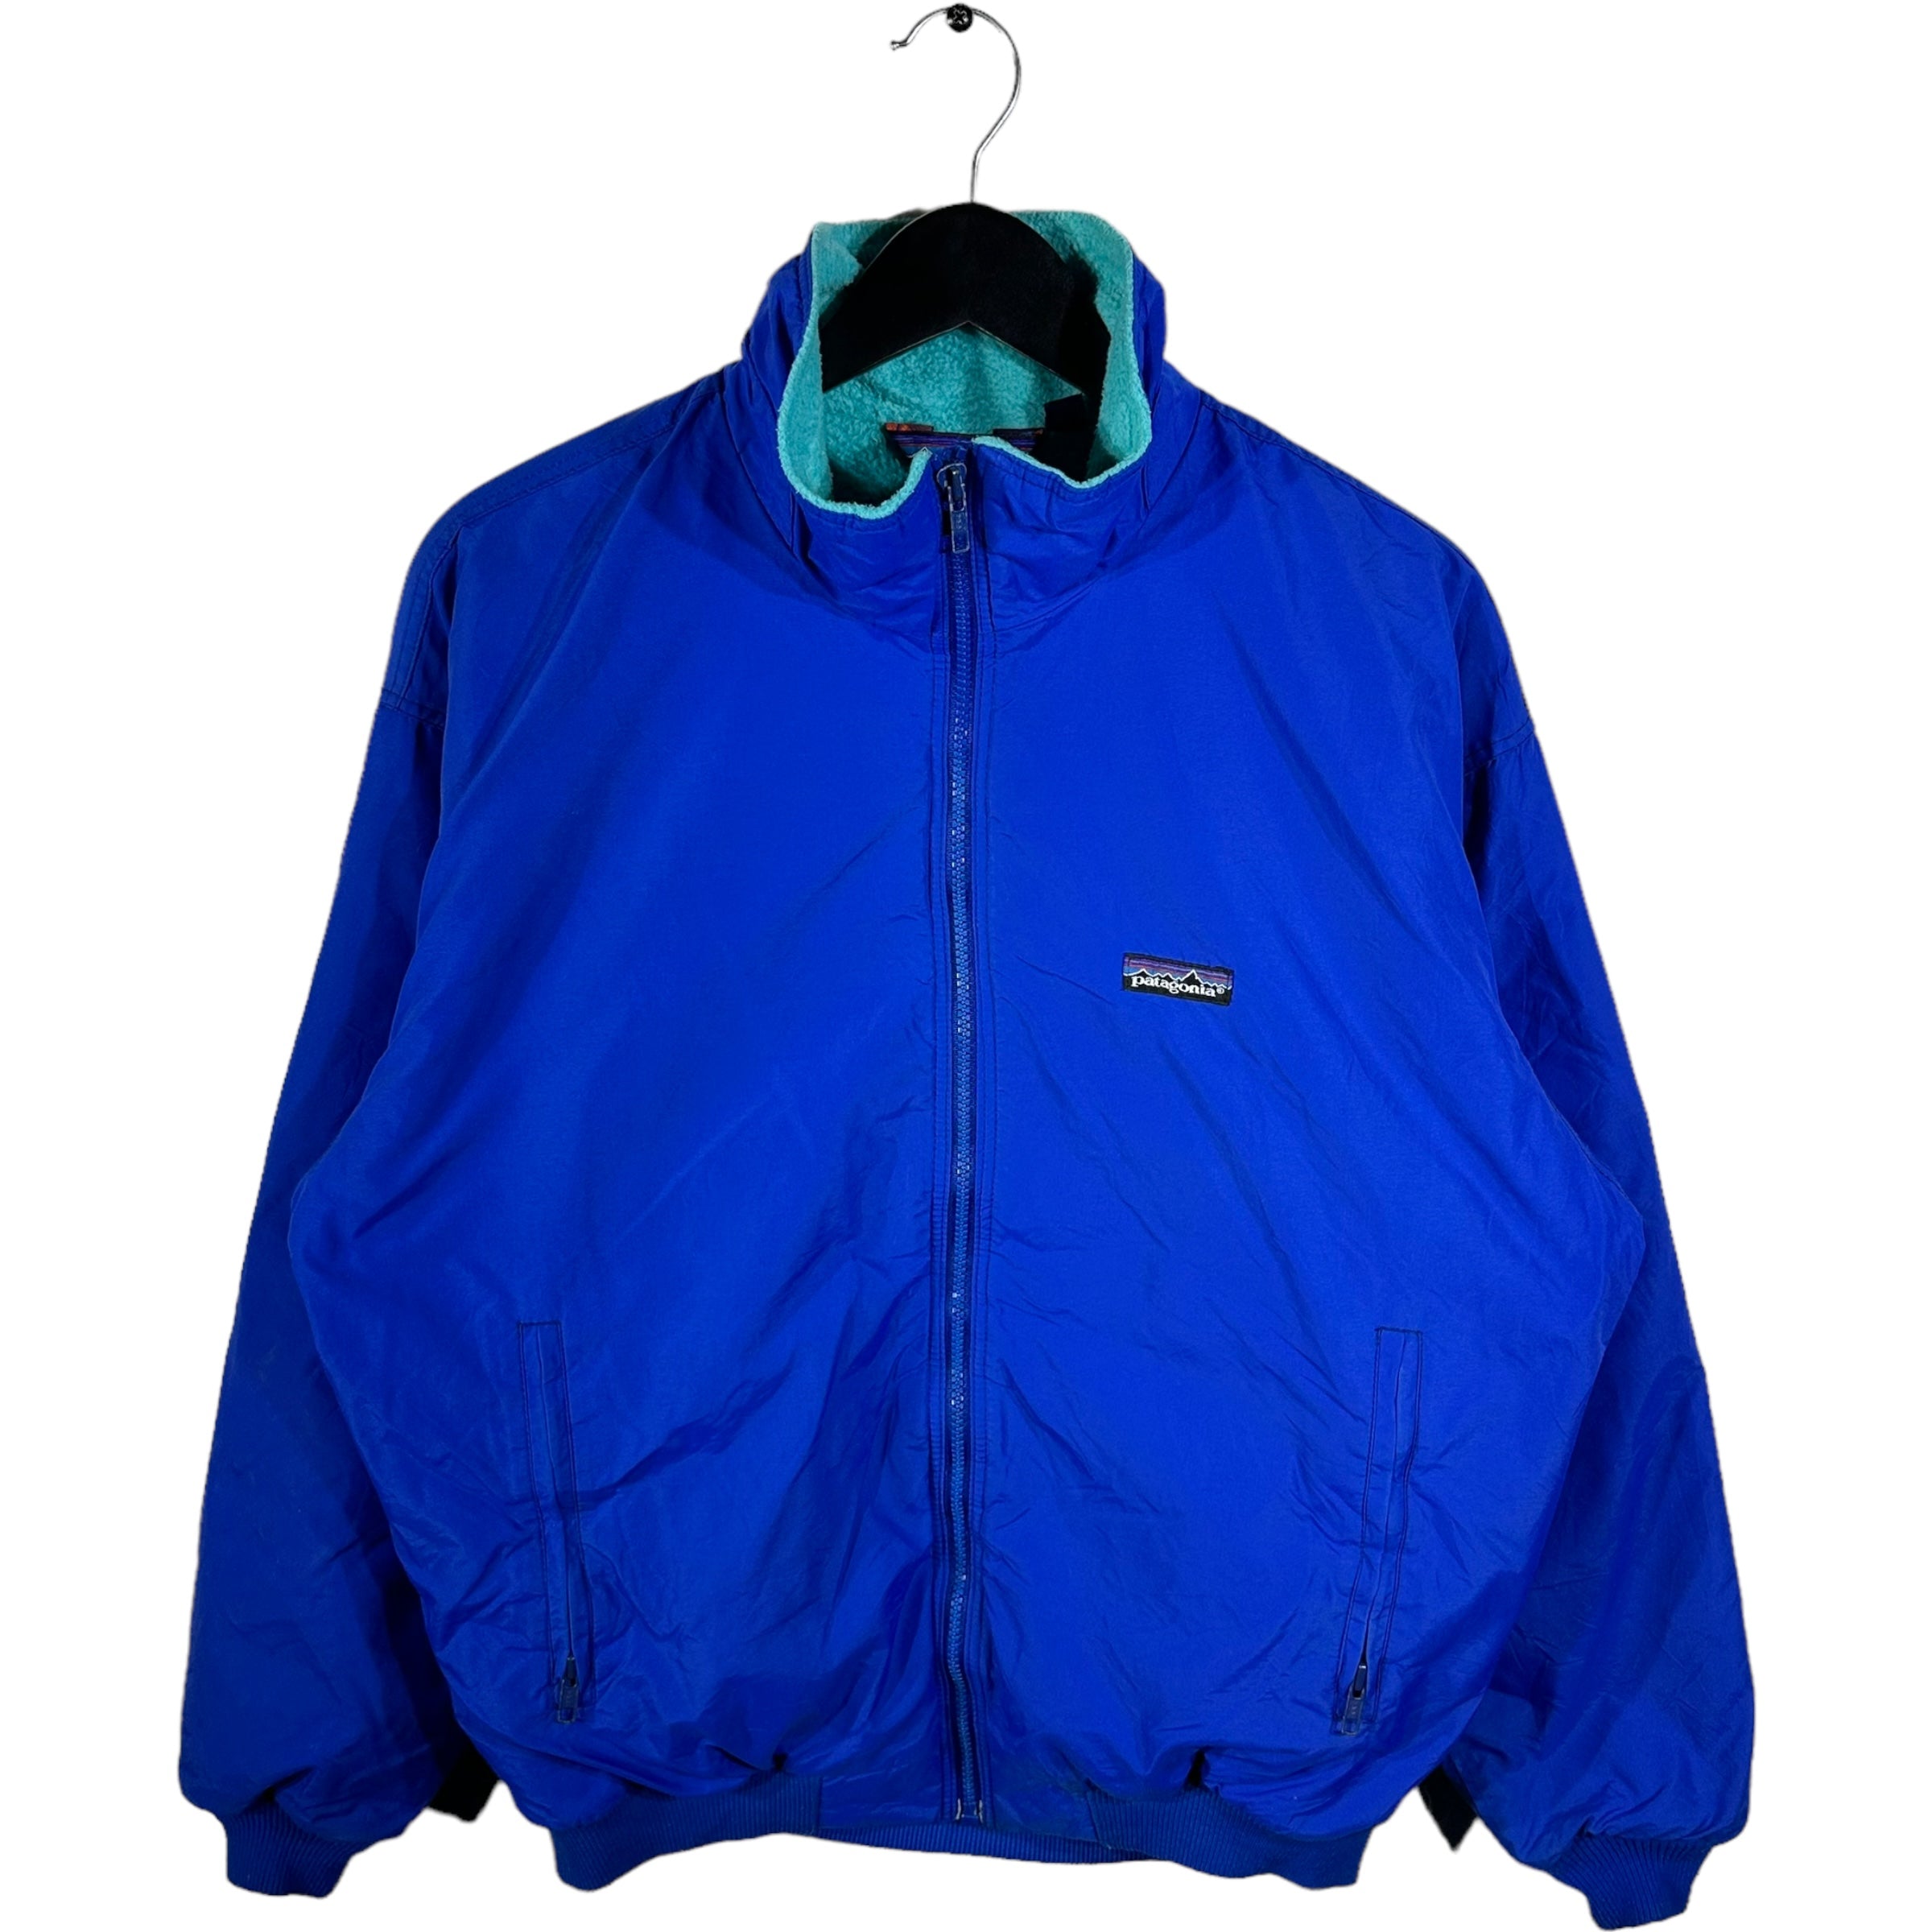 Vintage Patagonia Full Zip Fleece Lined Jacket